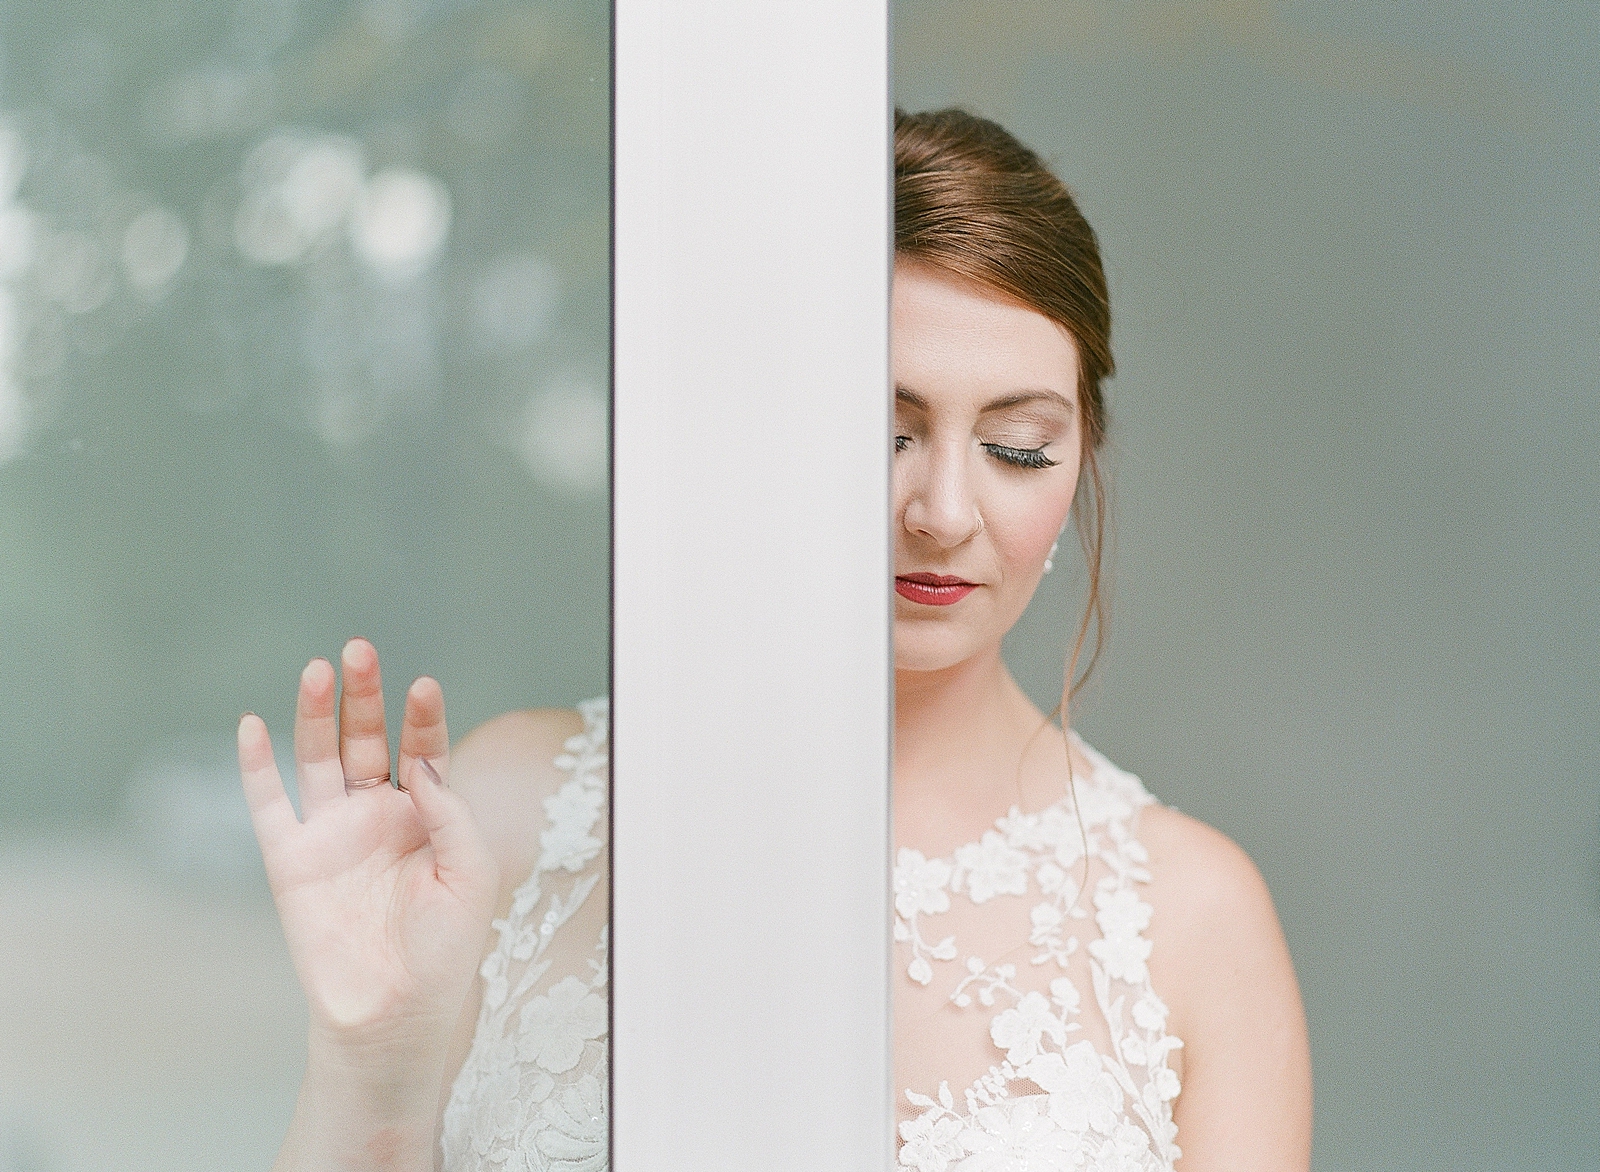 Asheville Bridal Editorial Bride Behind Door Looking Down Photo